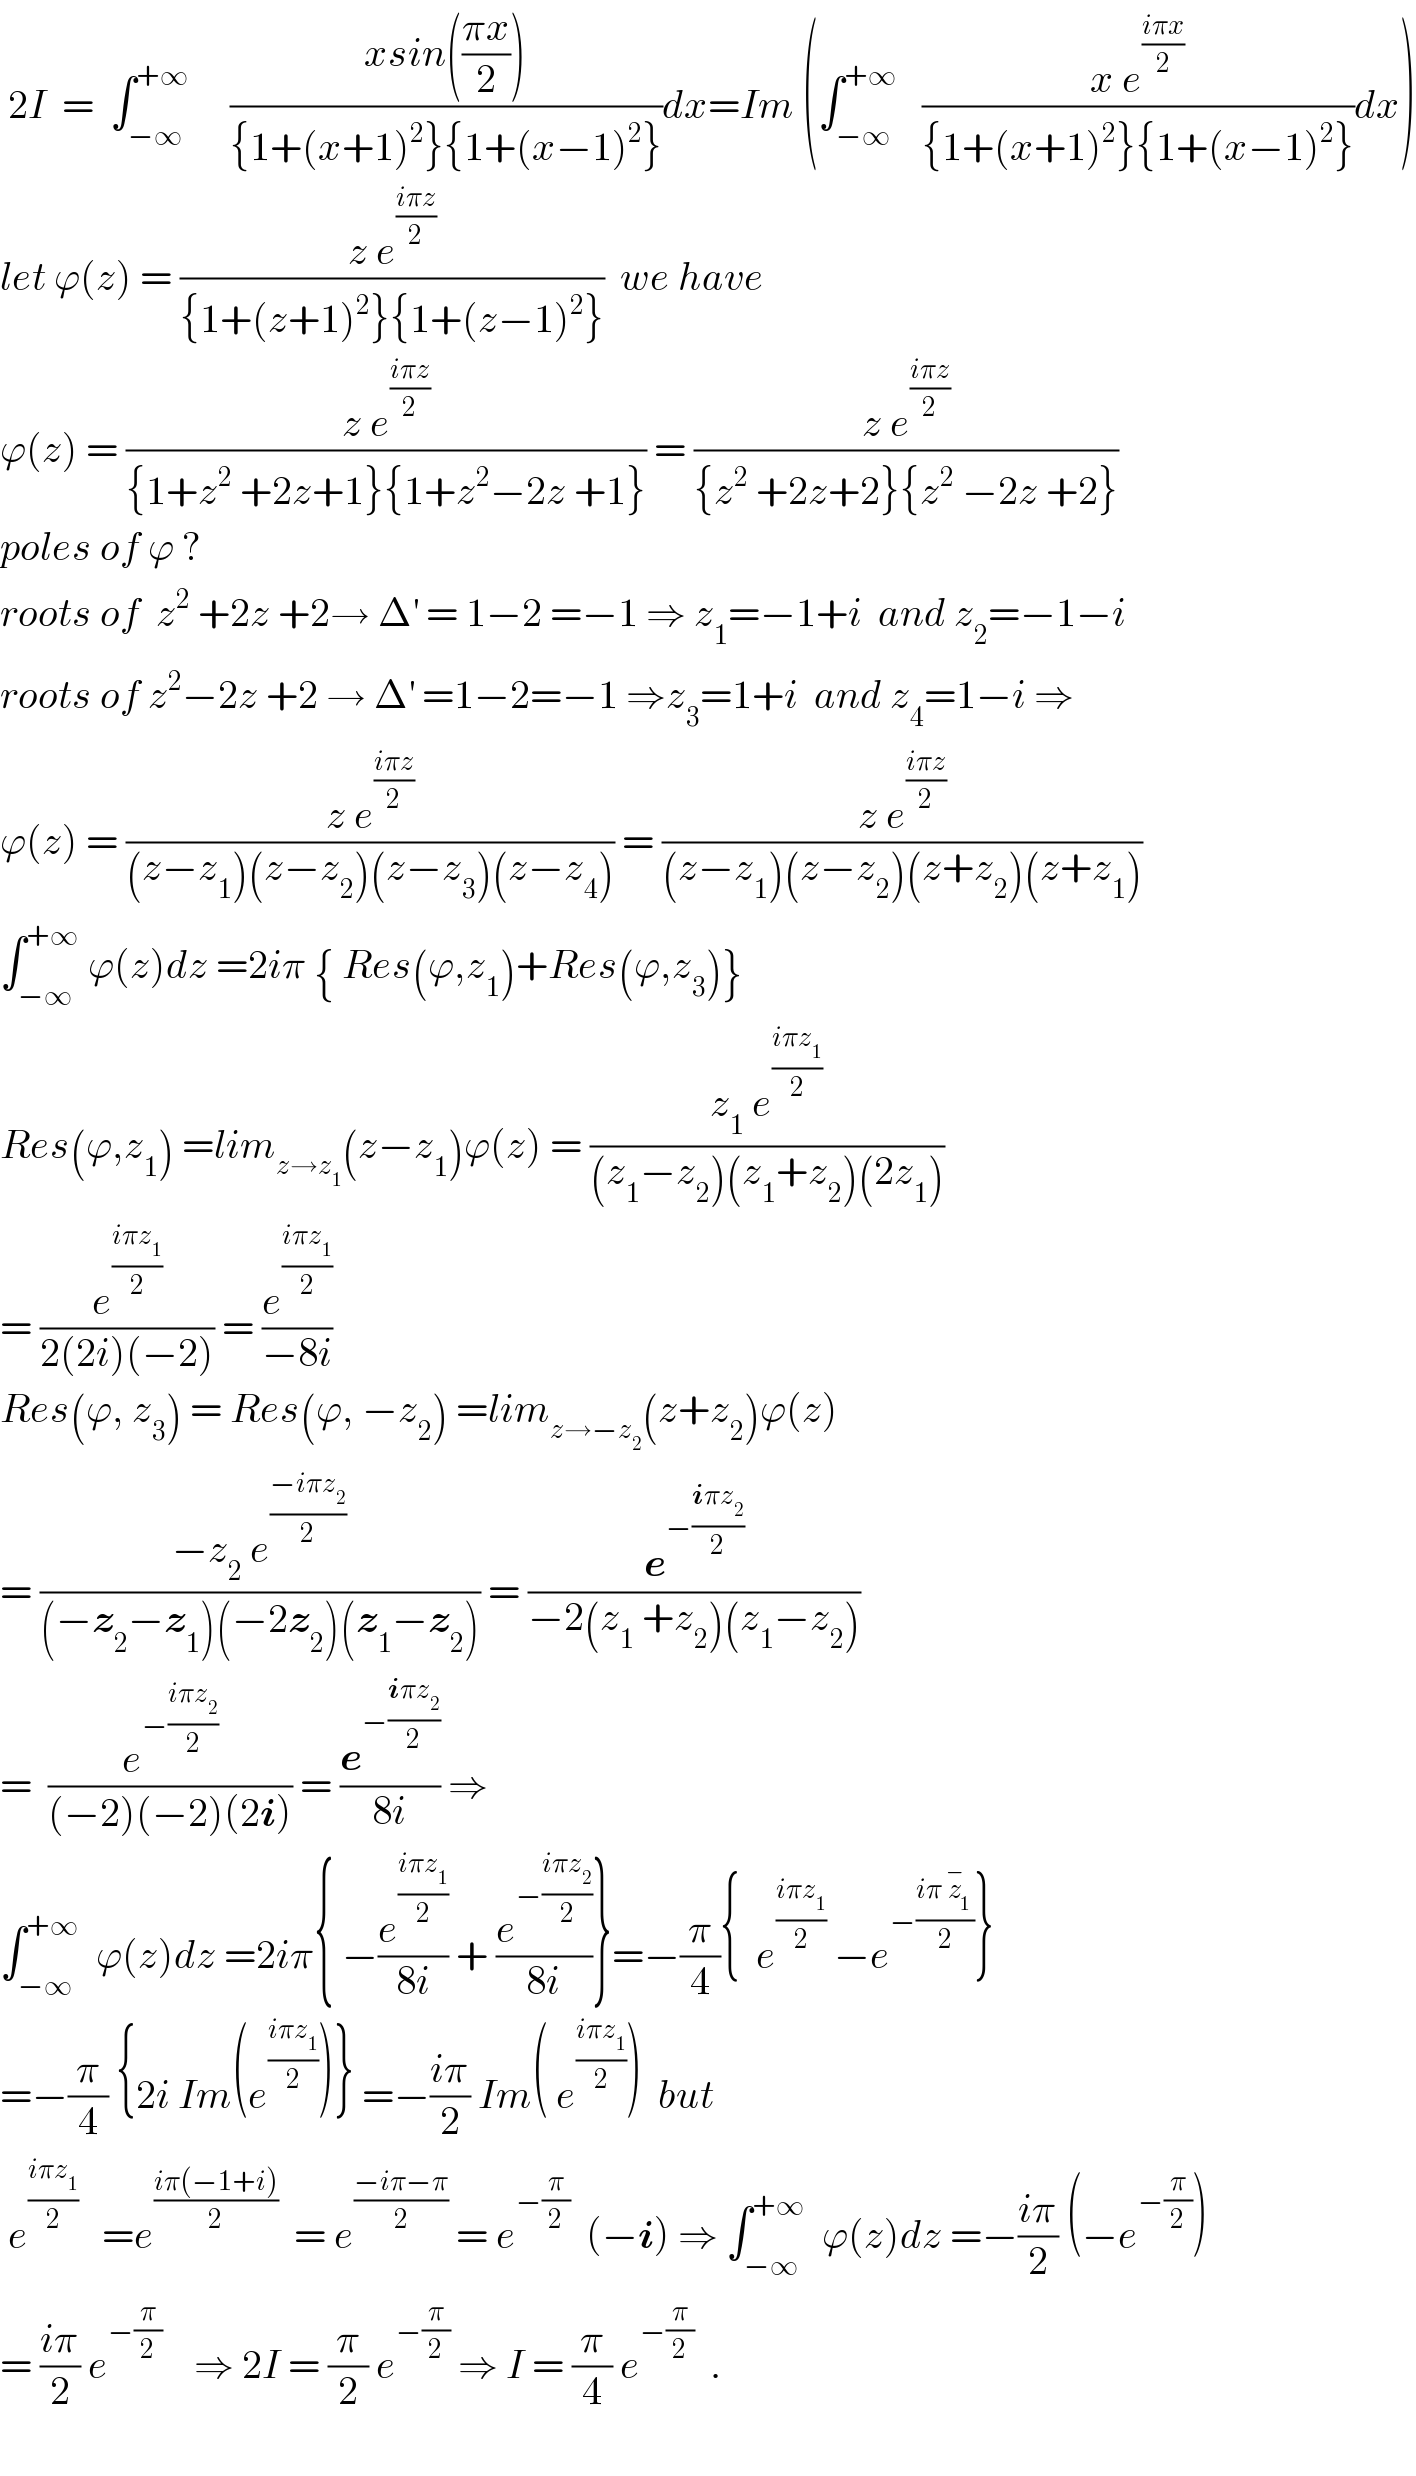  2I  =  ∫_(−∞) ^(+∞)      ((xsin(((πx)/2)))/({1+(x+1)^2 }{1+(x−1)^2 }))dx=Im (∫_(−∞) ^(+∞)    ((x e^((iπx)/2) )/({1+(x+1)^2 }{1+(x−1)^2 }))dx)  let ϕ(z) = ((z e^((iπz)/2) )/({1+(z+1)^2 }{1+(z−1)^2 }))  we have   ϕ(z) = ((z e^((iπz)/2) )/({1+z^2  +2z+1}{1+z^2 −2z +1})) = ((z e^((iπz)/2) )/({z^2  +2z+2}{z^2  −2z +2}))  poles of ϕ ?  roots of  z^2  +2z +2→ Δ^′  = 1−2 =−1 ⇒ z_1 =−1+i  and z_2 =−1−i  roots of z^2 −2z +2 → Δ^′  =1−2=−1 ⇒z_3 =1+i  and z_4 =1−i ⇒  ϕ(z) = ((z e^((iπz)/2) )/((z−z_1 )(z−z_2 )(z−z_3 )(z−z_4 ))) = ((z e^((iπz)/2) )/((z−z_1 )(z−z_2 )(z+z_2 )(z+z_1 )))  ∫_(−∞) ^(+∞)  ϕ(z)dz =2iπ { Res(ϕ,z_1 )+Res(ϕ,z_3 )}  Res(ϕ,z_1 ) =lim_(z→z_1 ) (z−z_1 )ϕ(z) = ((z_1  e^((iπz_1 )/2) )/((z_1 −z_2 )(z_1 +z_2 )(2z_1 )))  = (e^((iπz_1 )/2) /(2(2i)(−2))) = (e^((iπz_1 )/2) /(−8i))  Res(ϕ, z_3 ) = Res(ϕ, −z_2 ) =lim_(z→−z_2 ) (z+z_2 )ϕ(z)  = ((−z_2  e^((−iπz_2 )/2) )/((−z_2 −z_1 )(−2z_2 )(z_1 −z_2 ))) = (e^(−((iπz_2 )/2)) /(−2(z_1  +z_2 )(z_1 −z_2 )))  =  (e^(−((iπz_2 )/2)) /((−2)(−2)(2i))) = (e^(−((iπz_2 )/2)) /(8i)) ⇒  ∫_(−∞) ^(+∞)   ϕ(z)dz =2iπ{ −(e^((iπz_1 )/2) /(8i)) + (e^(−((iπz_2 )/2)) /(8i))}=−(π/4){  e^((iπz_1 )/2)  −e^(−((iπ z_1 ^− )/2)) }  =−(π/4) {2i Im(e^((iπz_1 )/2) )} =−((iπ)/2) Im( e^((iπz_1 )/2) )  but   e^((iπz_1 )/2)    =e^((iπ(−1+i))/2)   = e^((−iπ−π)/2)  = e^(−(π/2))   (−i) ⇒ ∫_(−∞) ^(+∞)   ϕ(z)dz =−((iπ)/2) (−e^(−(π/2)) )  = ((iπ)/2) e^(−(π/2))     ⇒ 2I = (π/2) e^(−(π/2))  ⇒ I = (π/4) e^(−(π/2))   .    